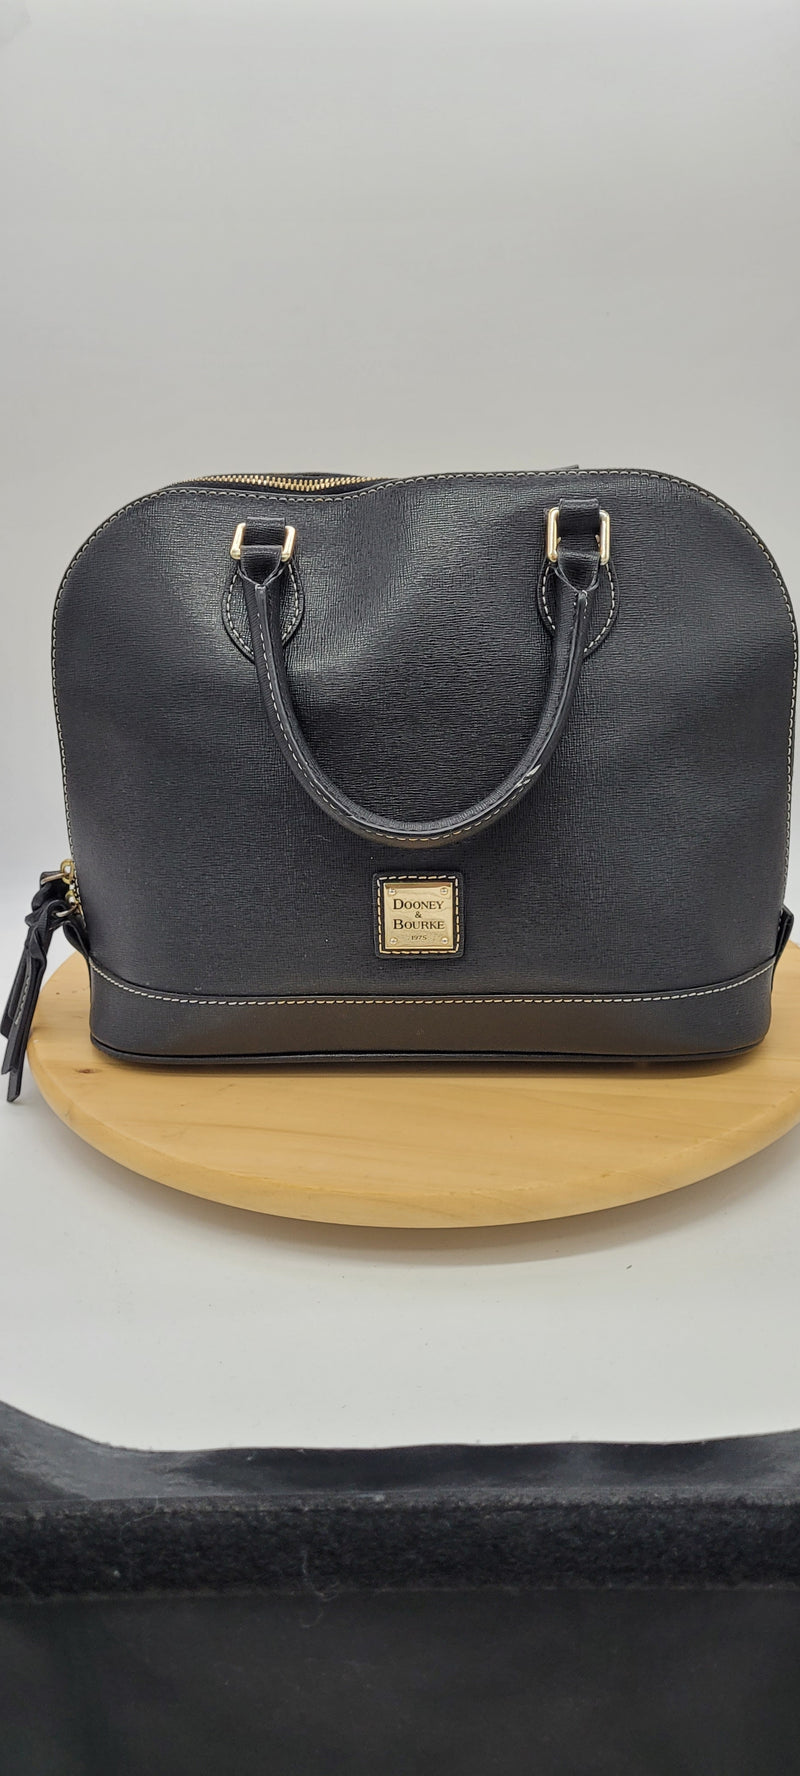 Dooney & Bourke Black handbags